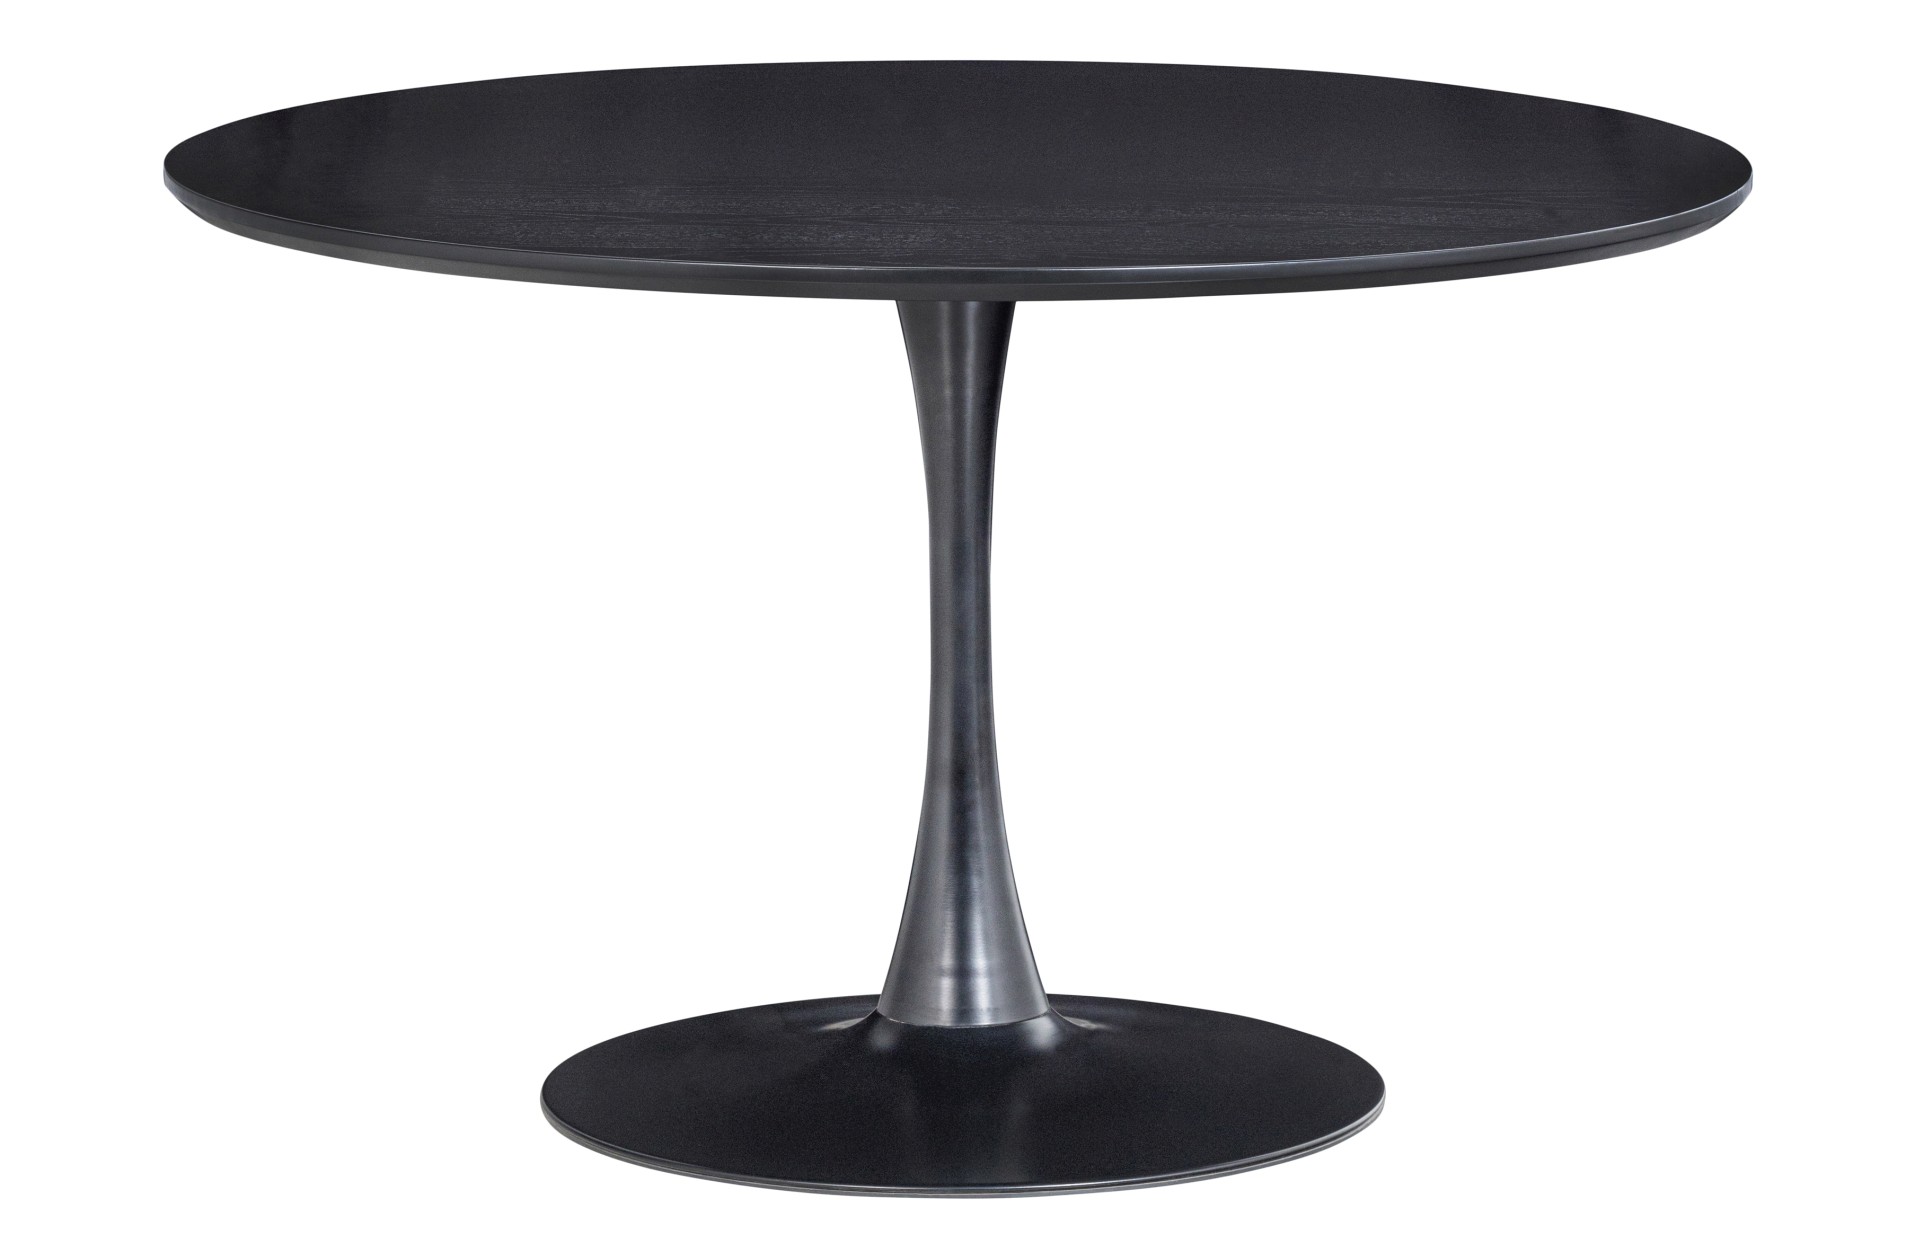 Der Esstisch Sammy überzeugt mit seinem modernem Design. Gefertigt wurde die Tischplatte aus MDF Holz, das Gestell wurde aus Metall hergestellt. Der Tisch hat einen schwarzen Farbton.